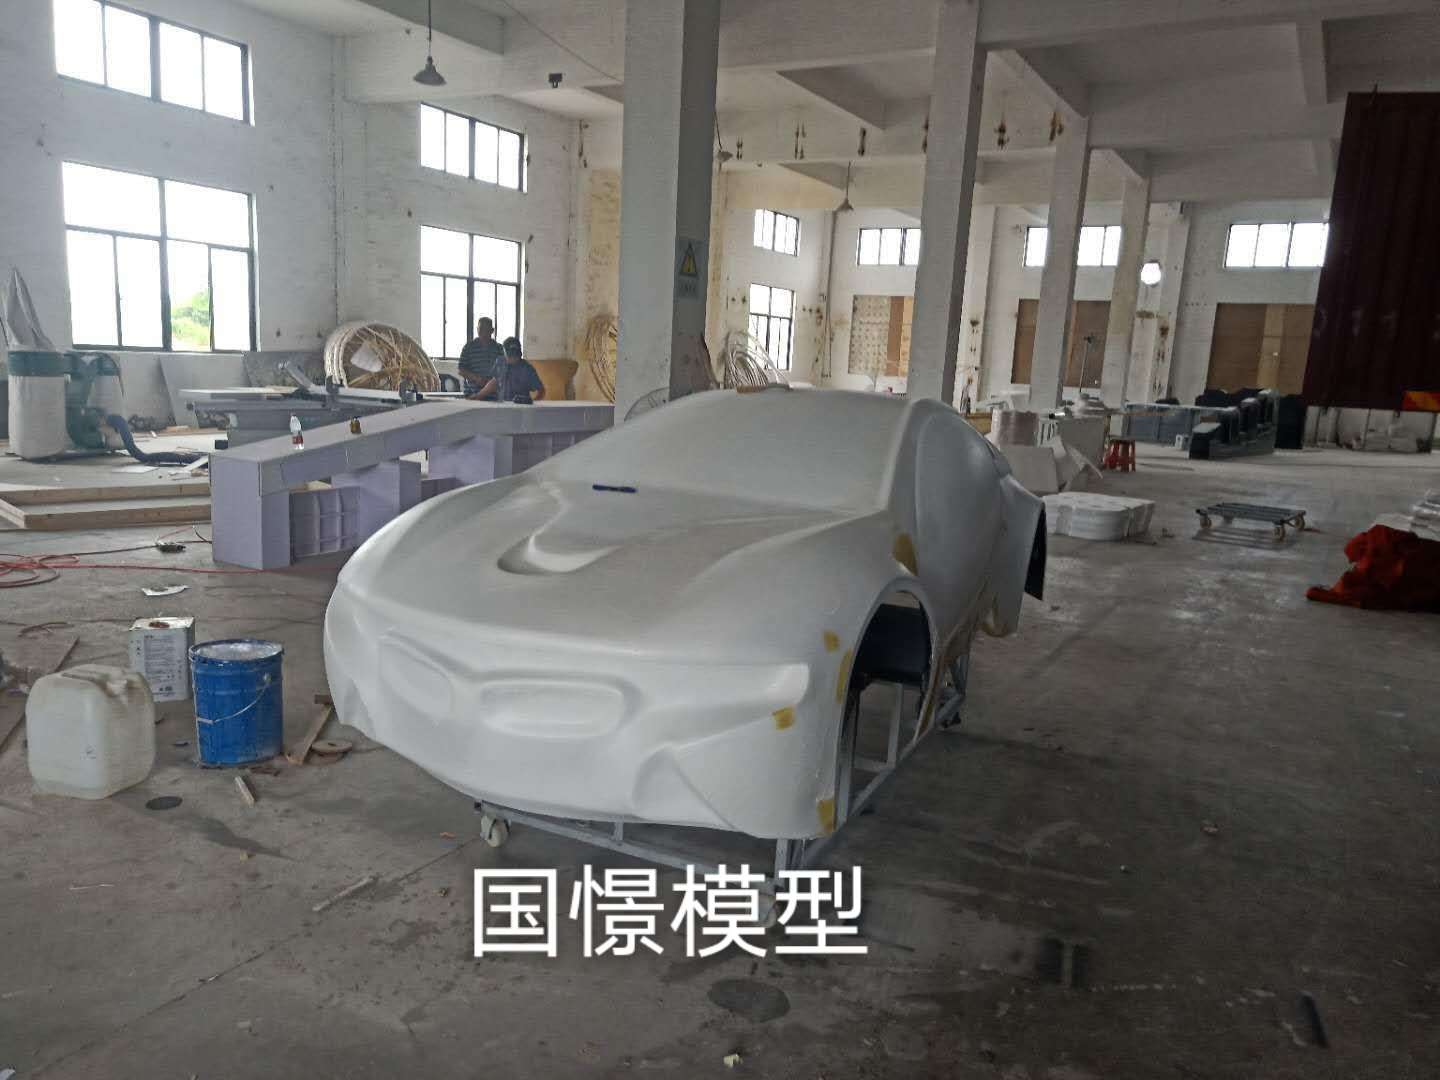 漳浦县车辆模型